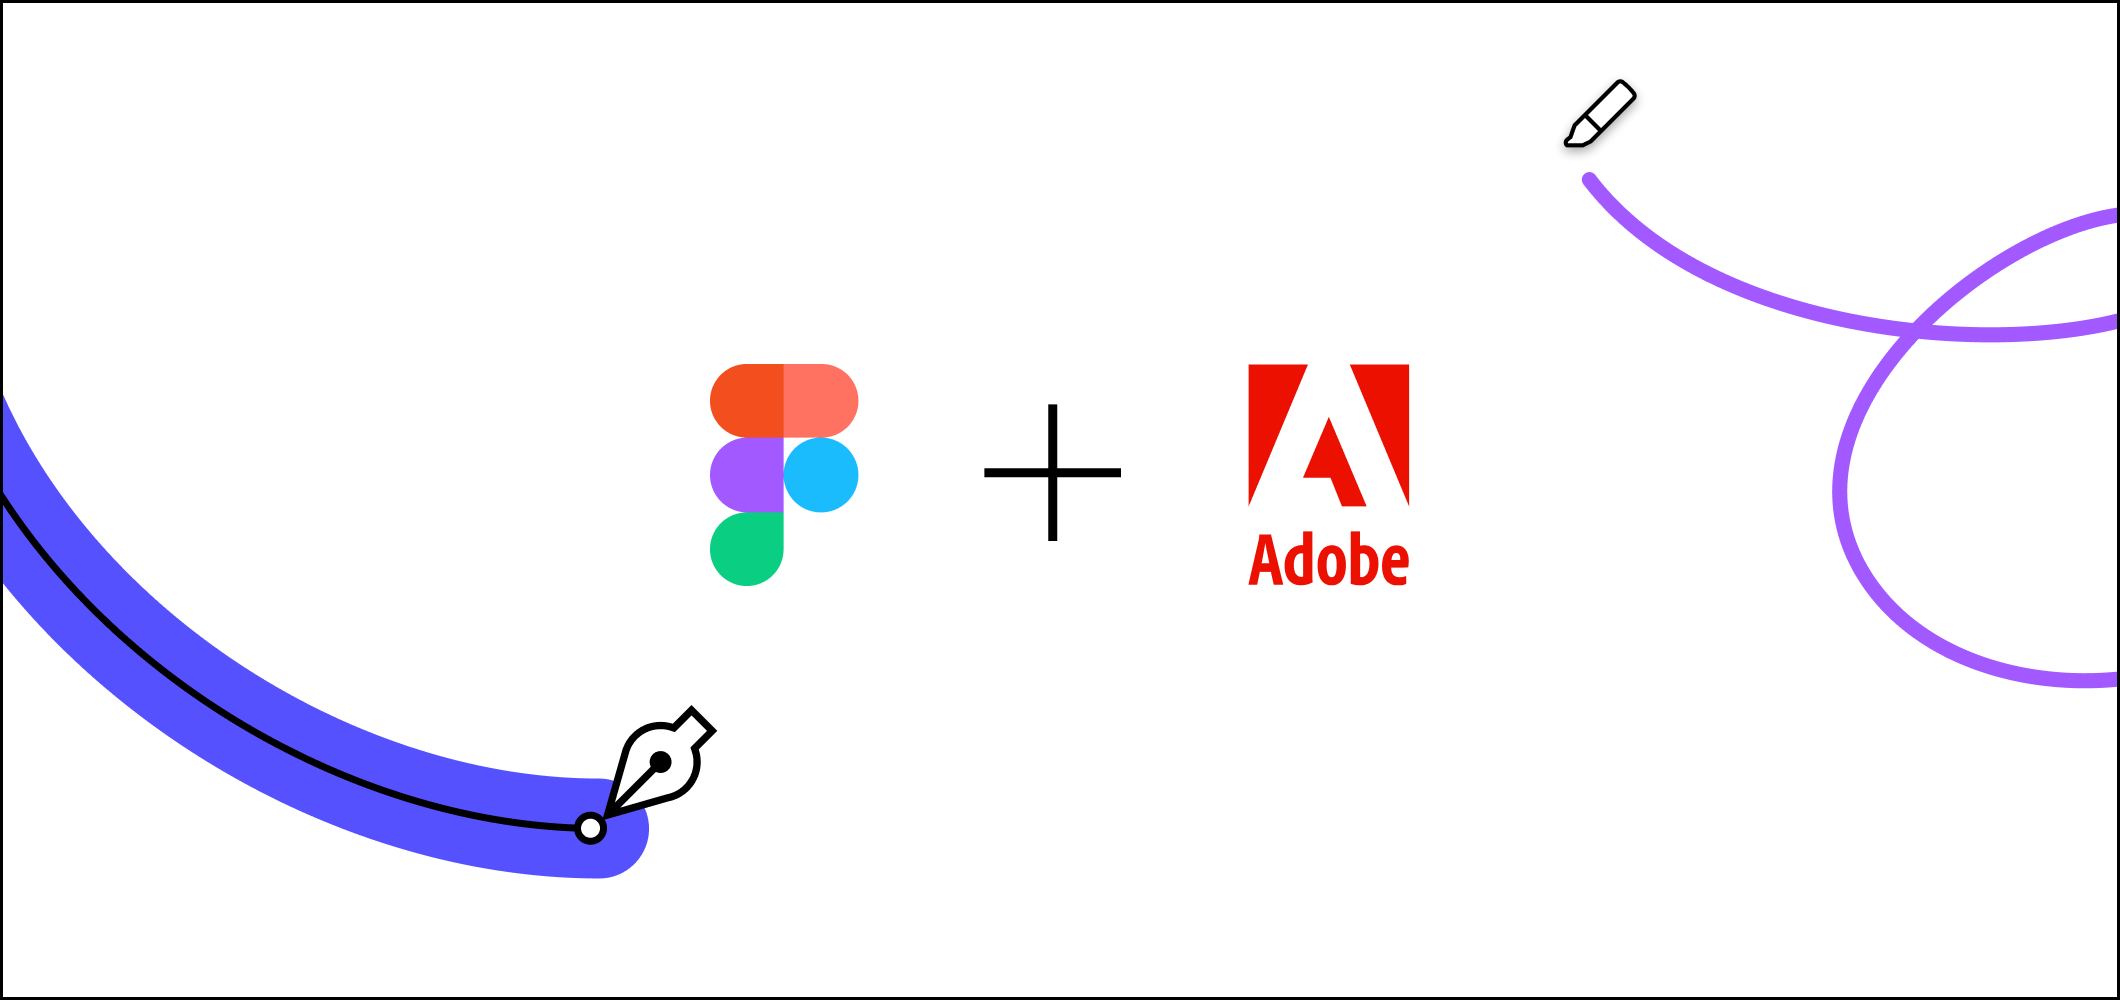 Respire fundo: Adobe promete que Figma continuará gratuito